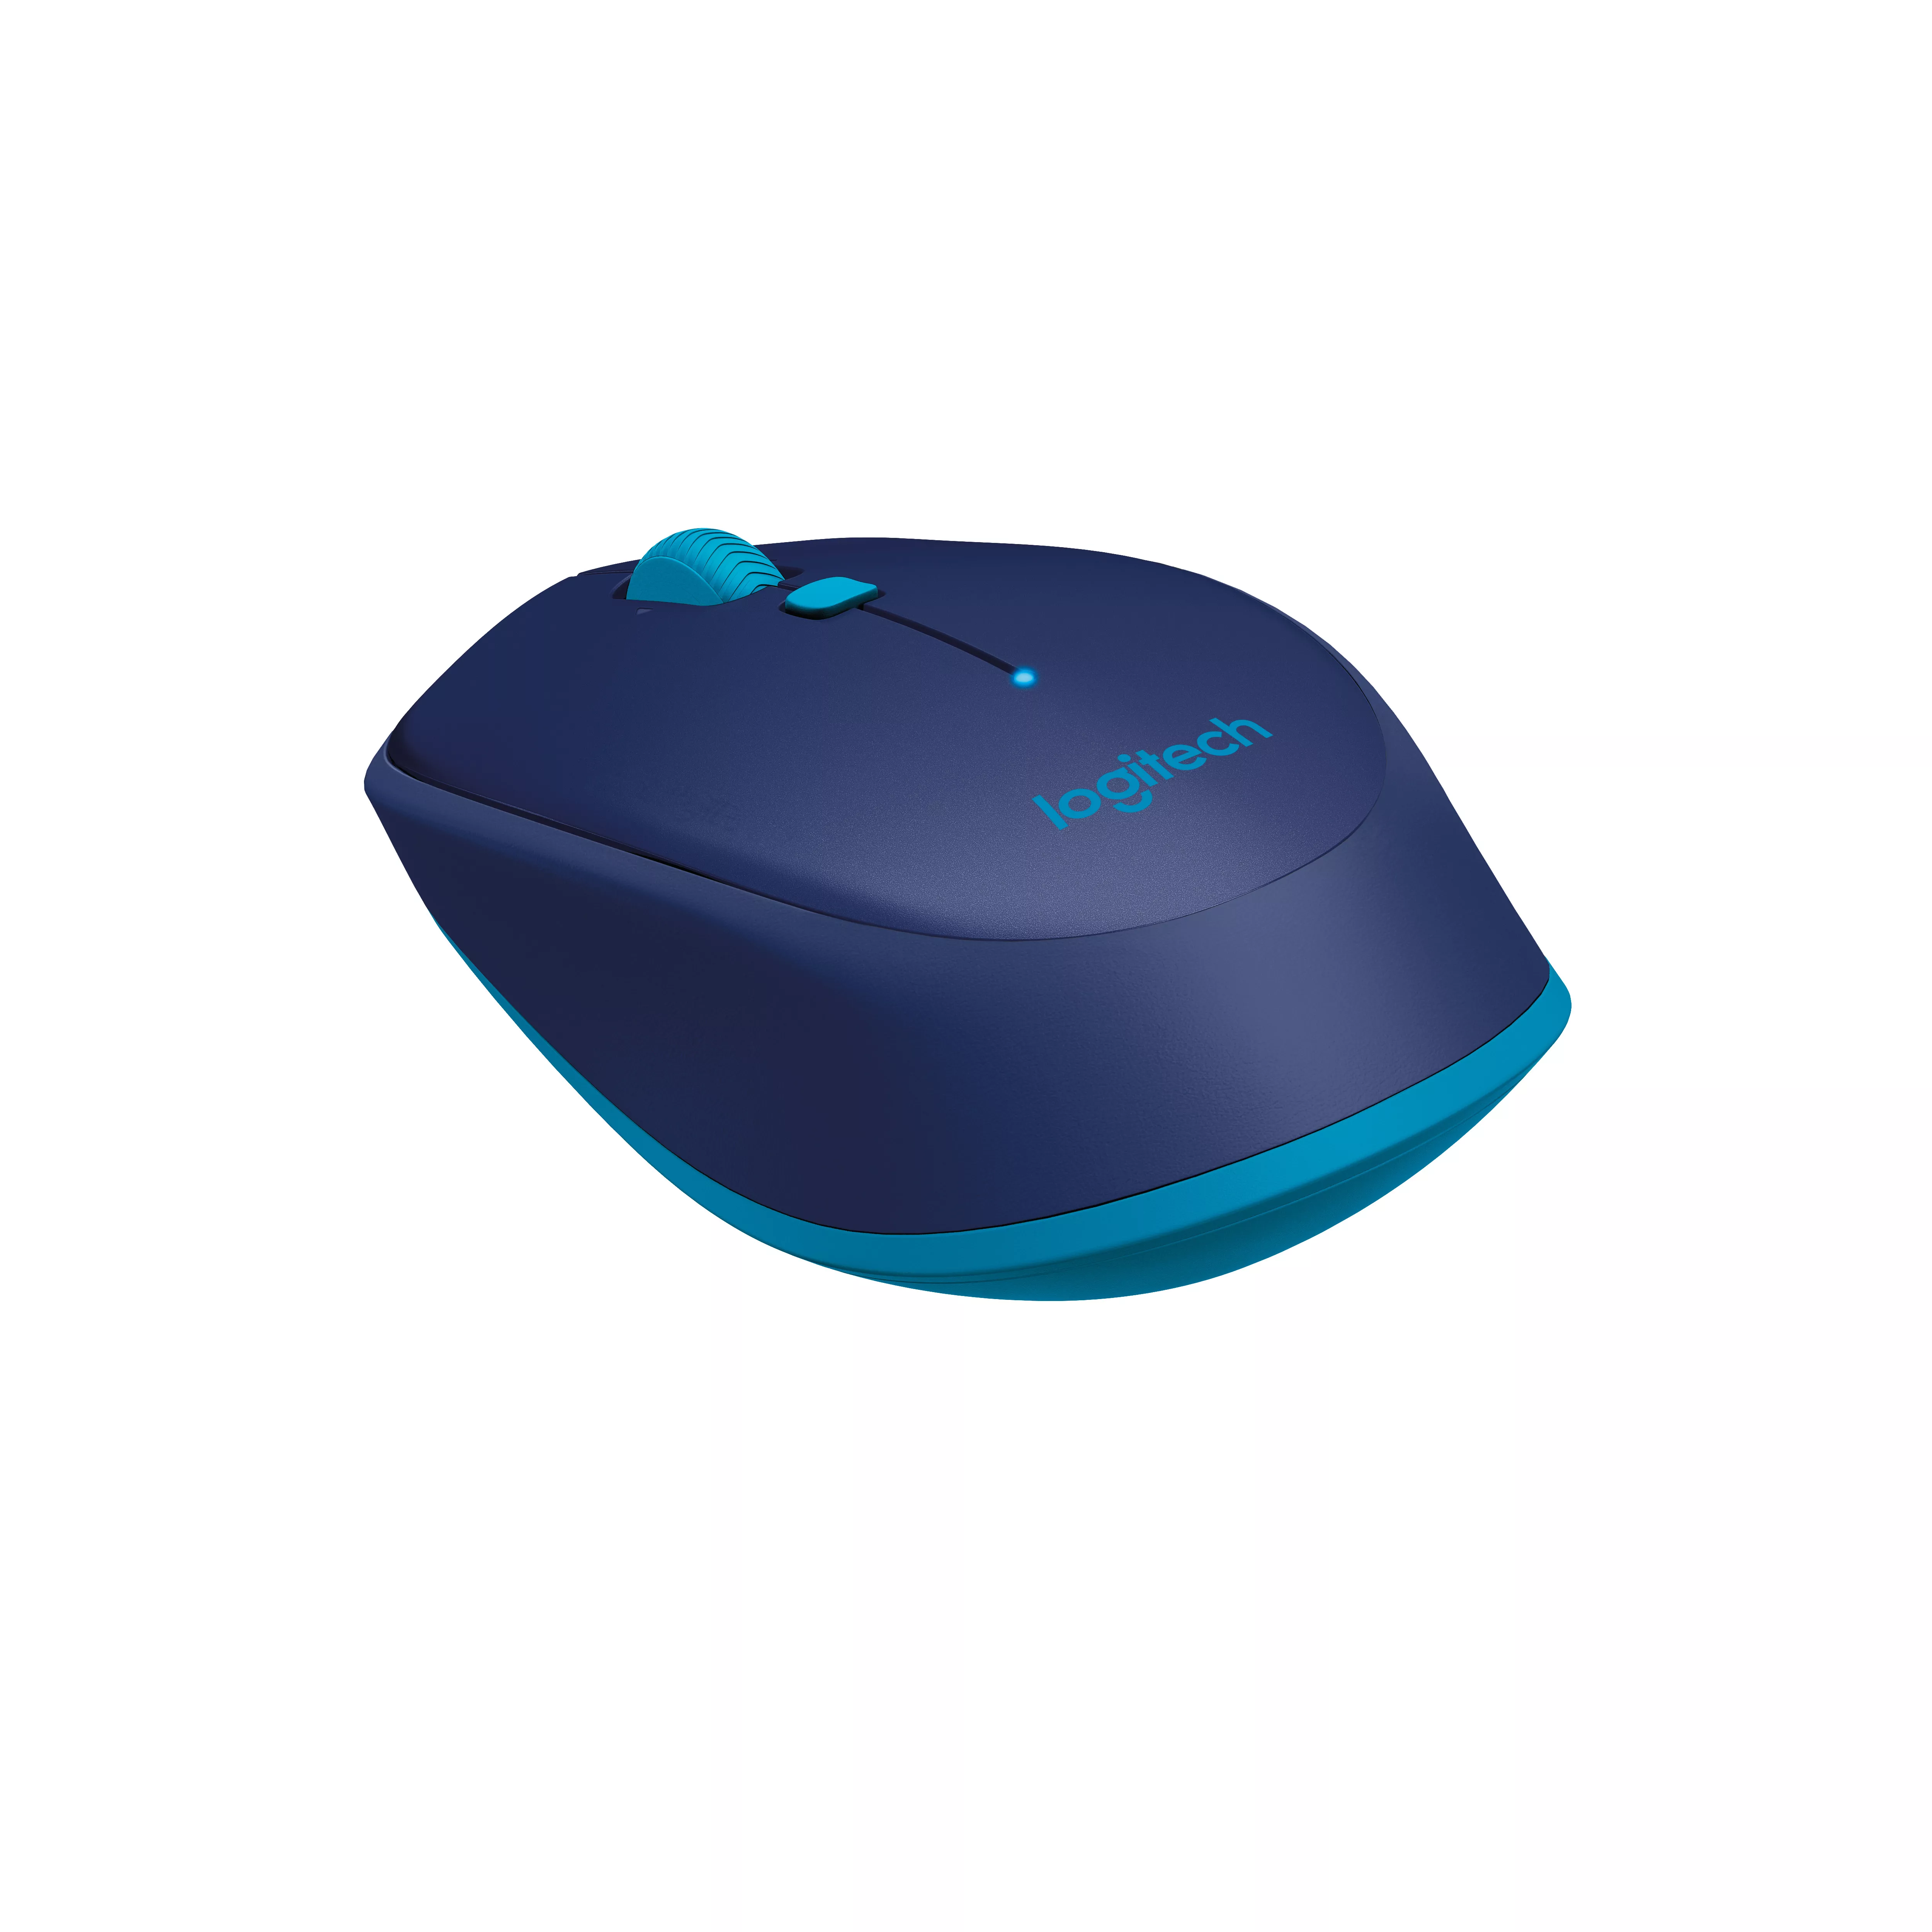 Vente Logitech M535 Bluetooth Mouse Logitech au meilleur prix - visuel 4